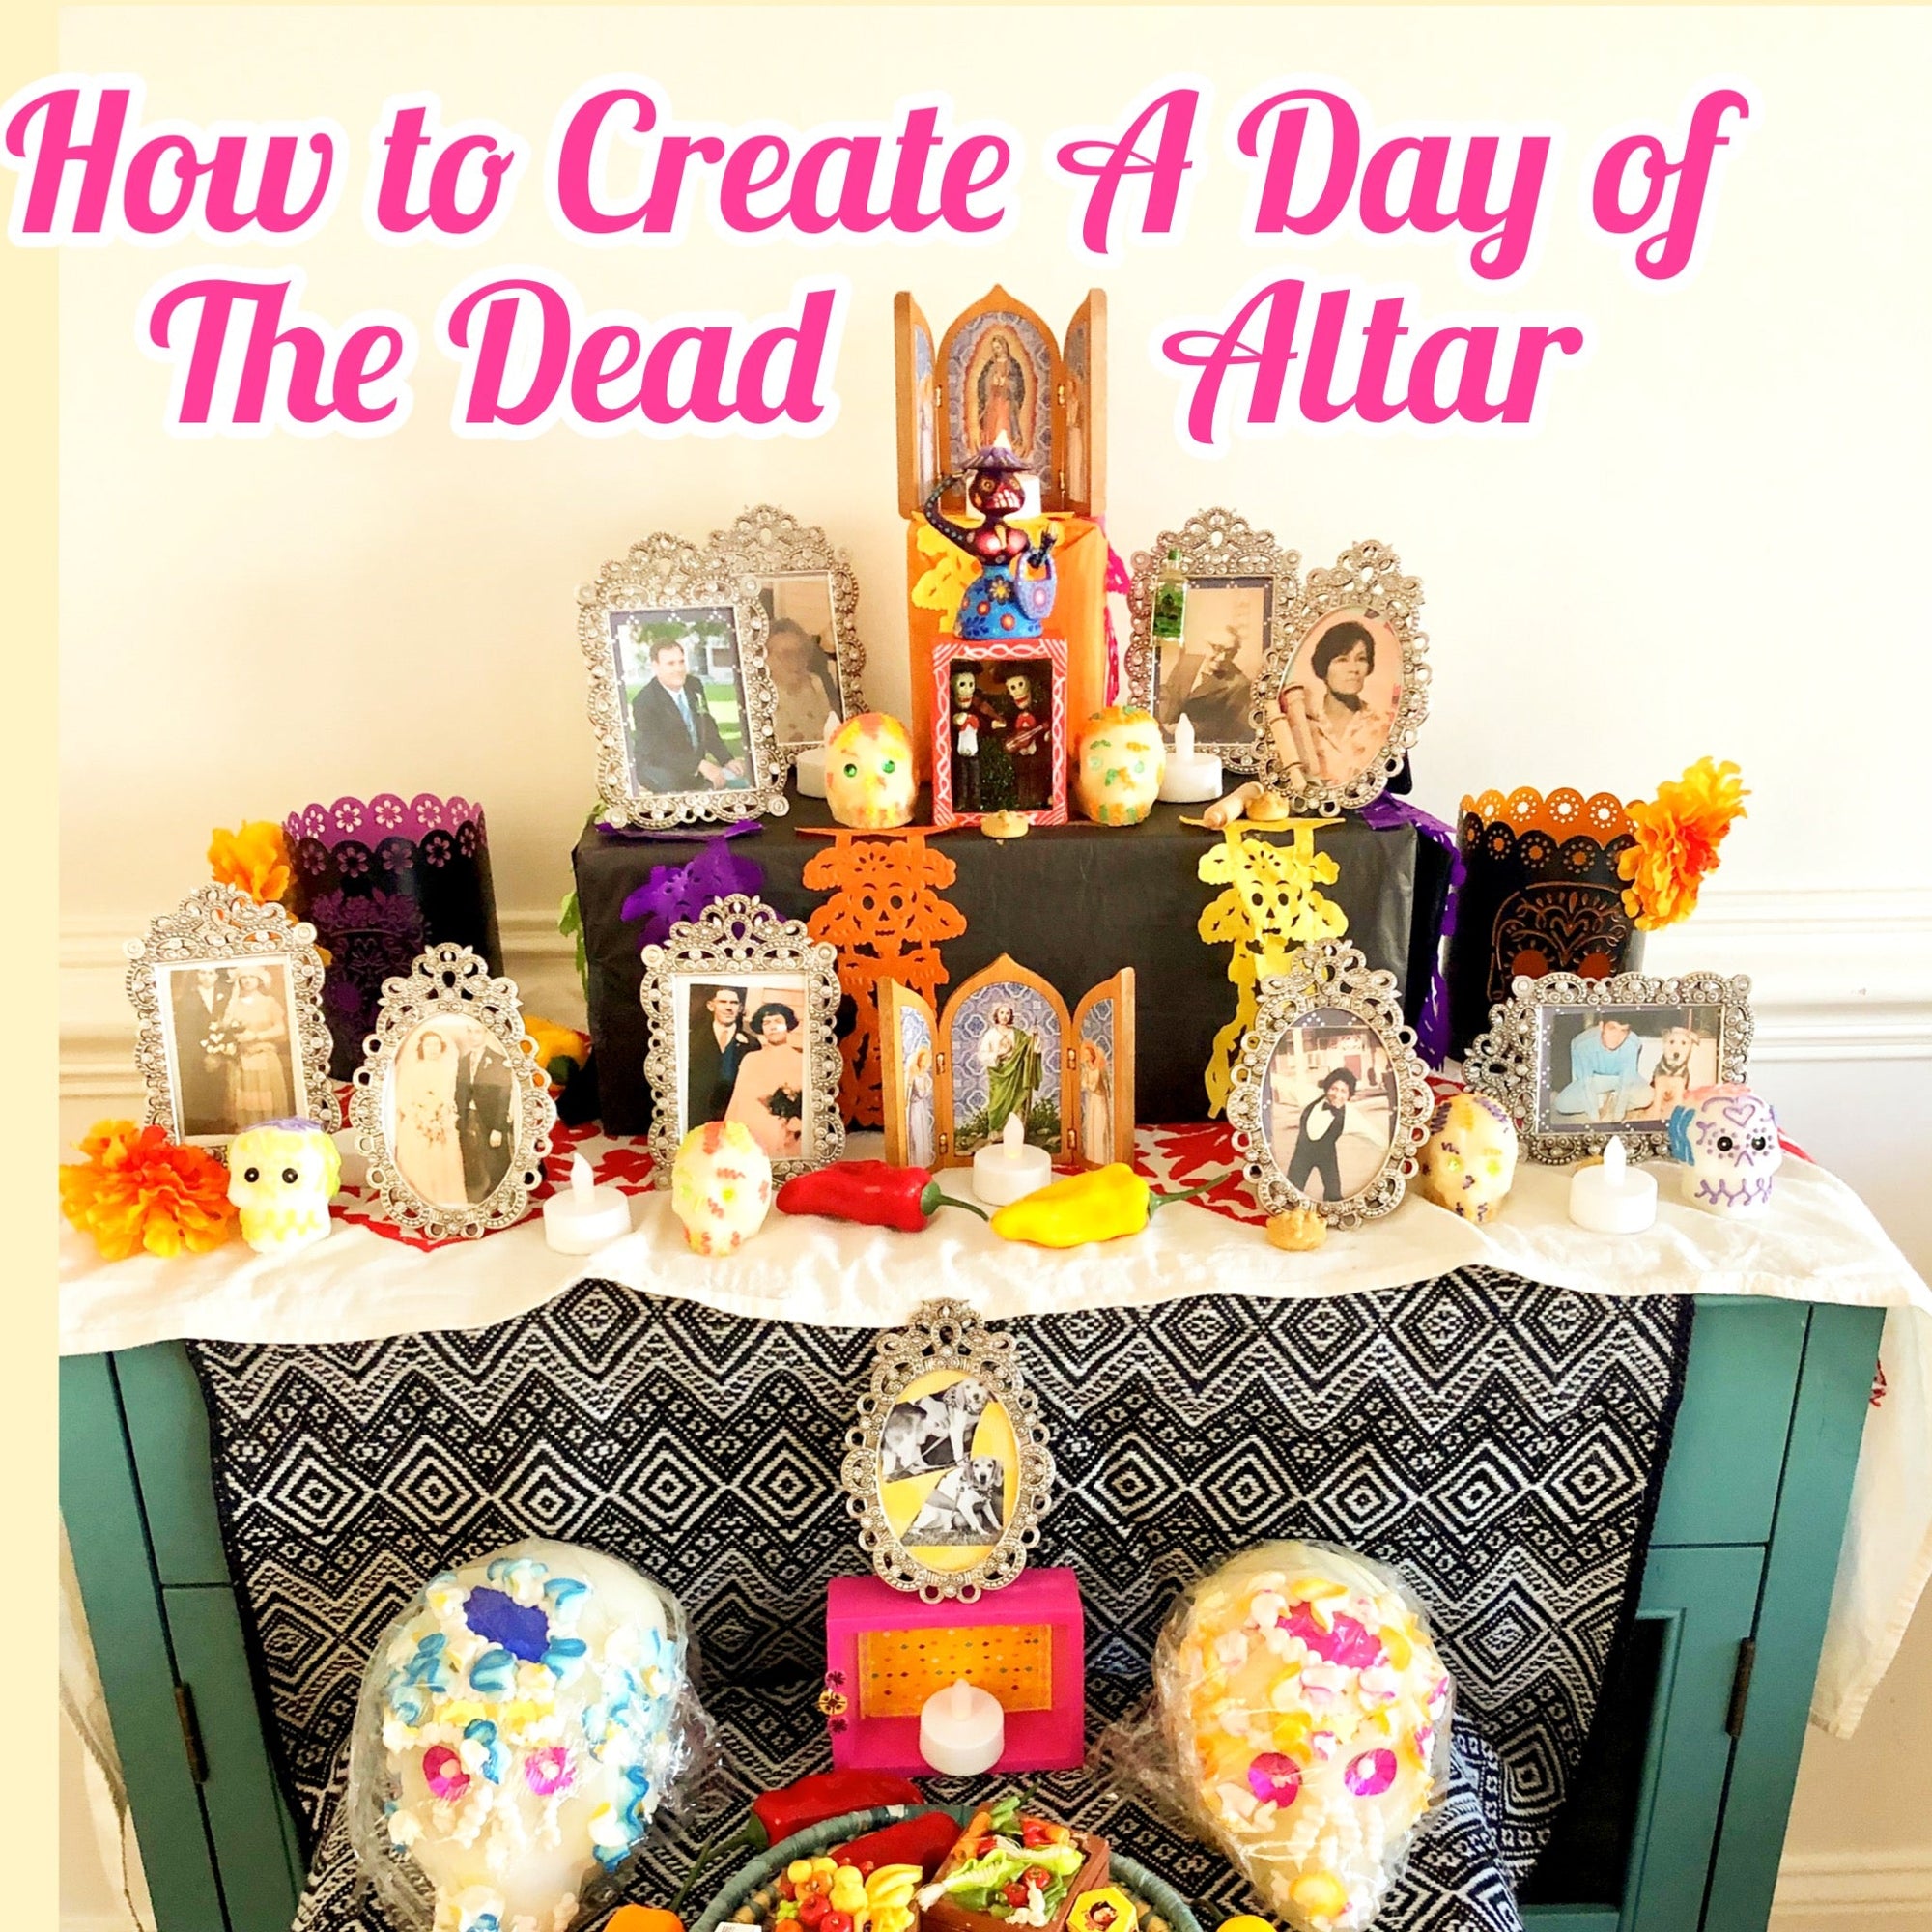 How to create a Day of the Dead Altar or Día de Muertos Ofrenda - Mi LegaSi